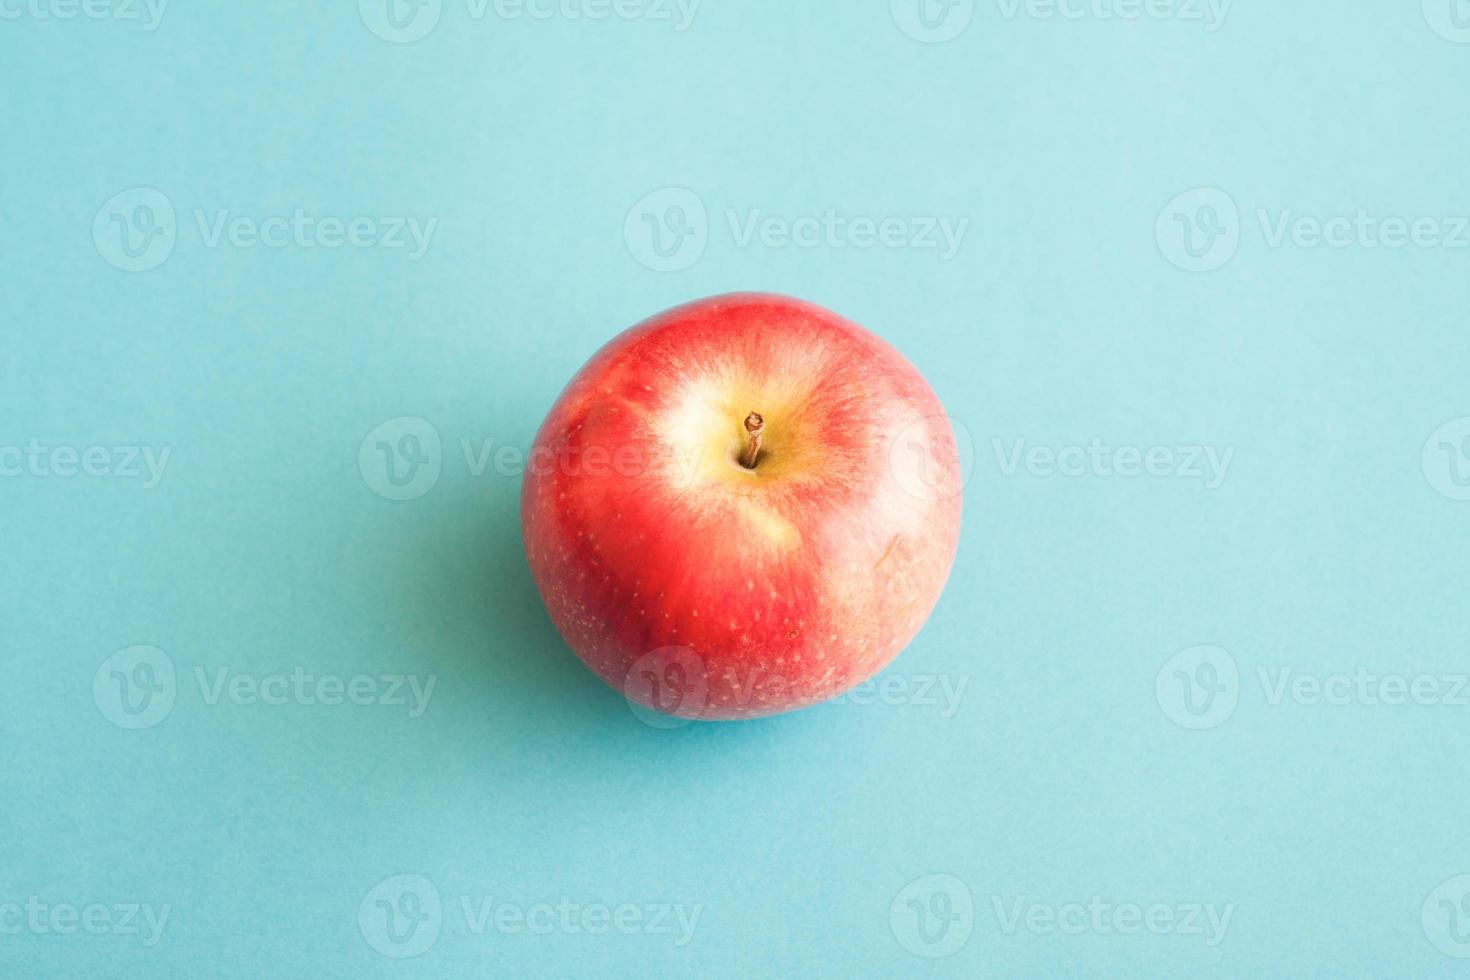 imagem minimalista de uma maçã vermelha sobre fundo azul. foto